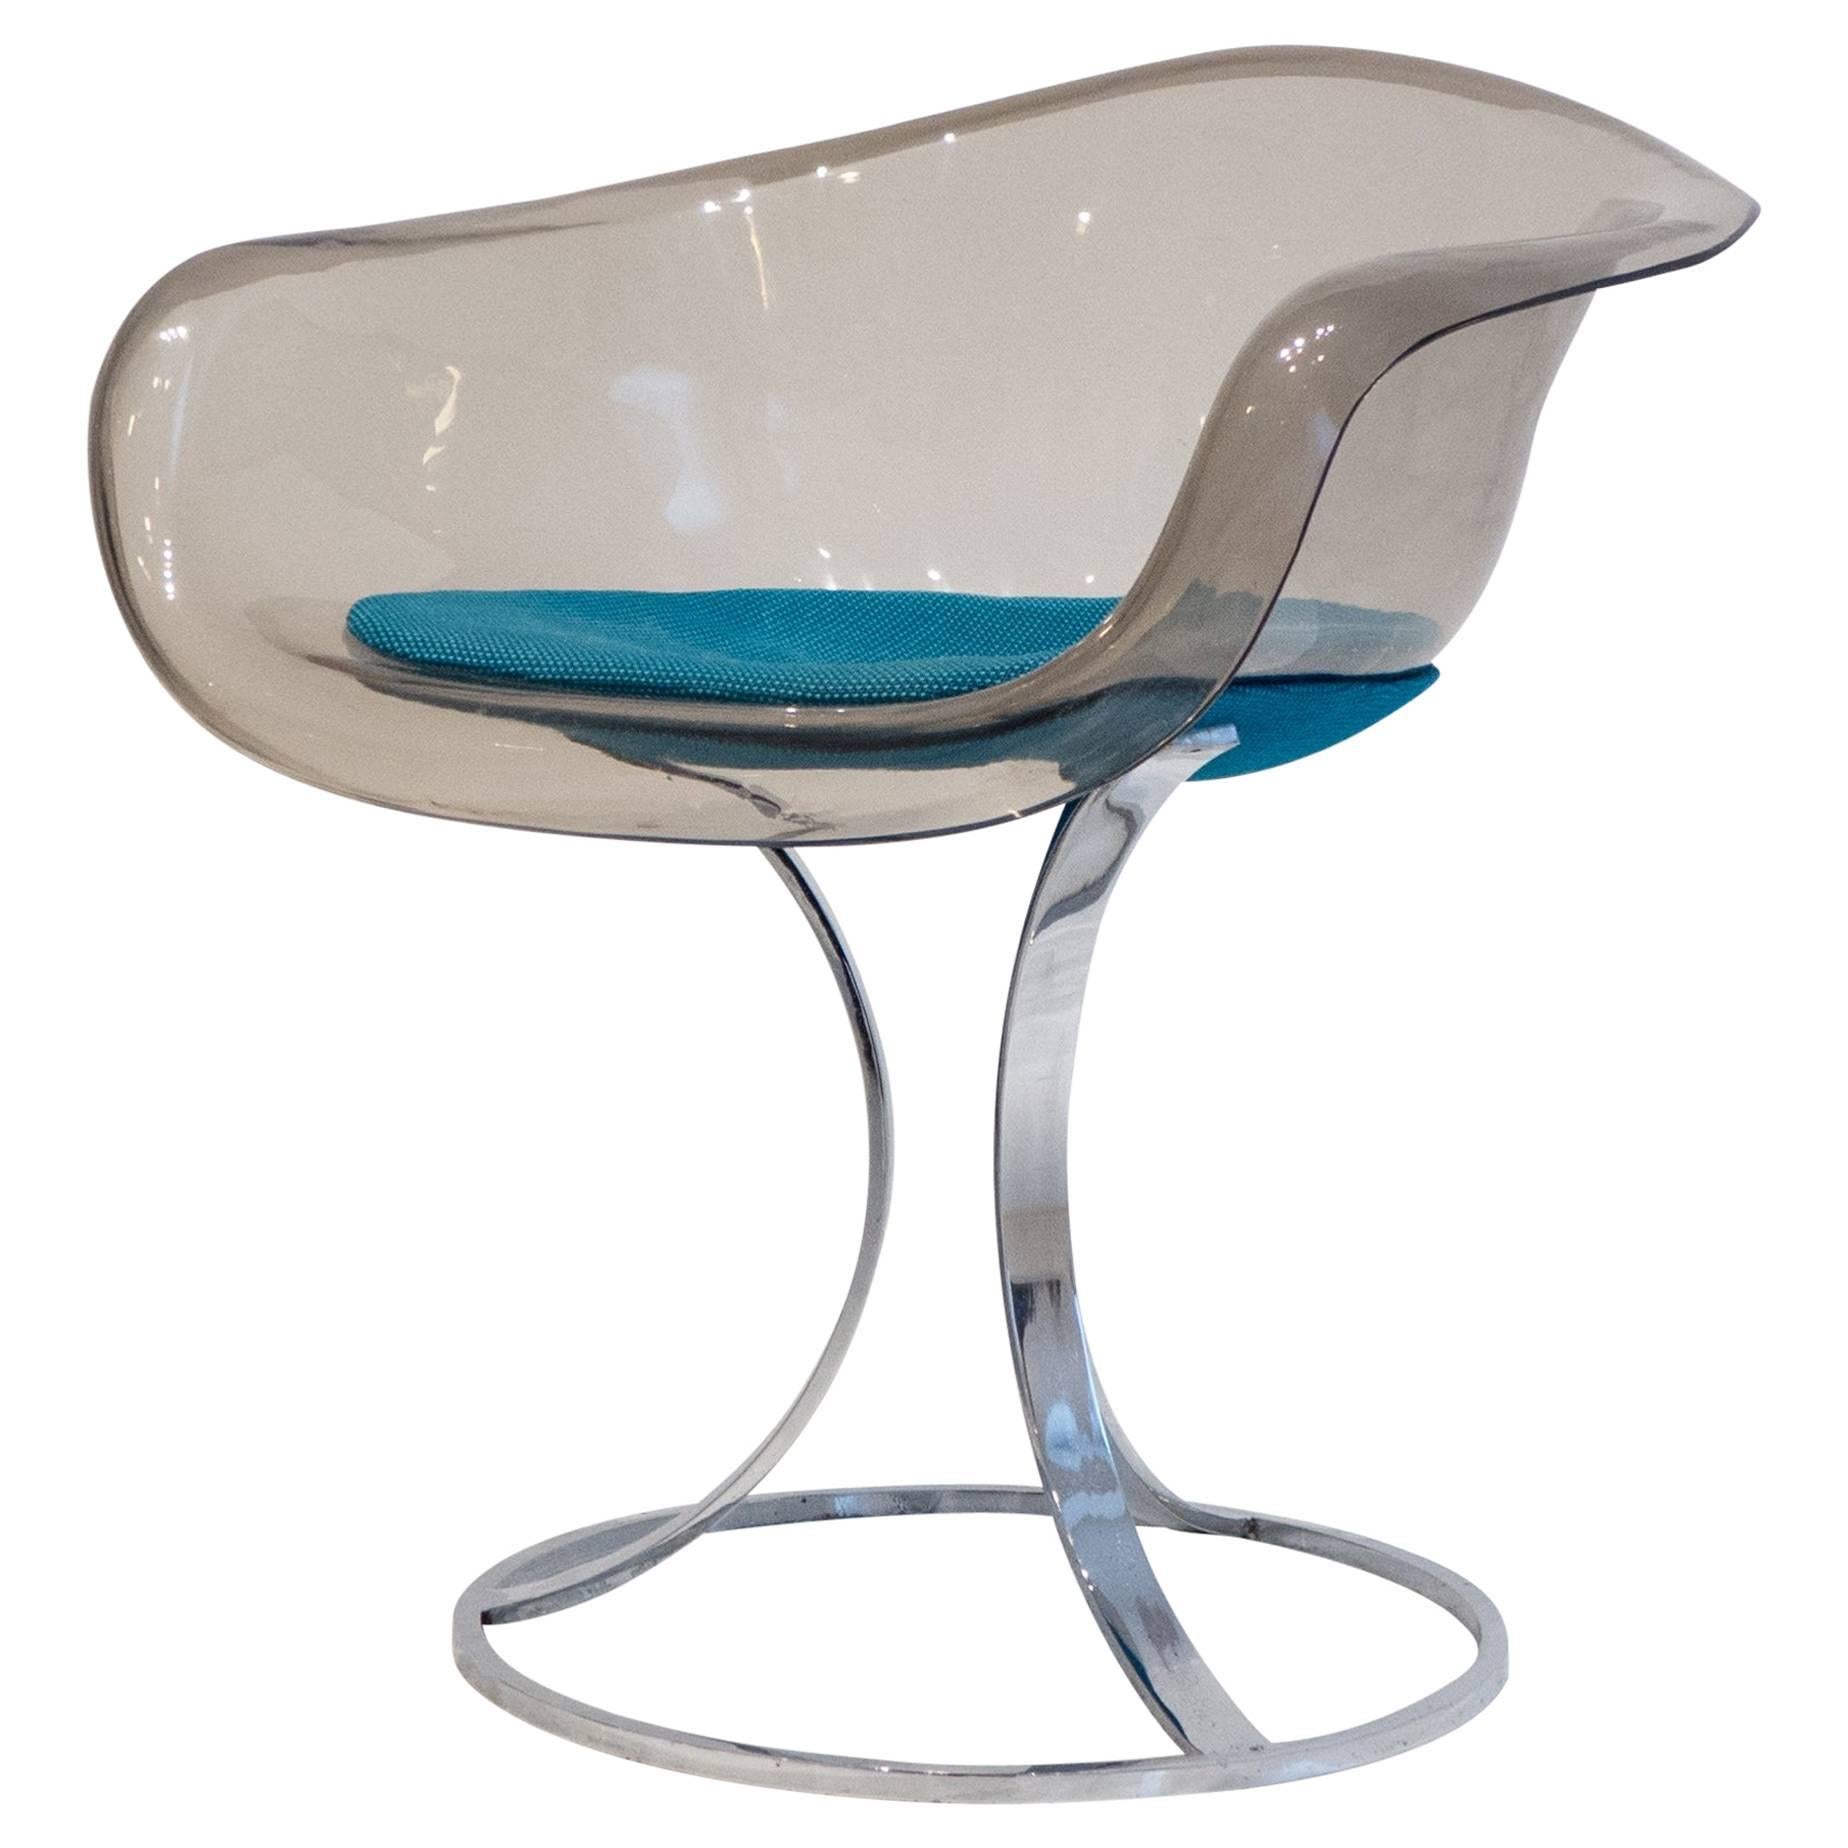 Peter Hoyte Acrylic and Chrome Chair